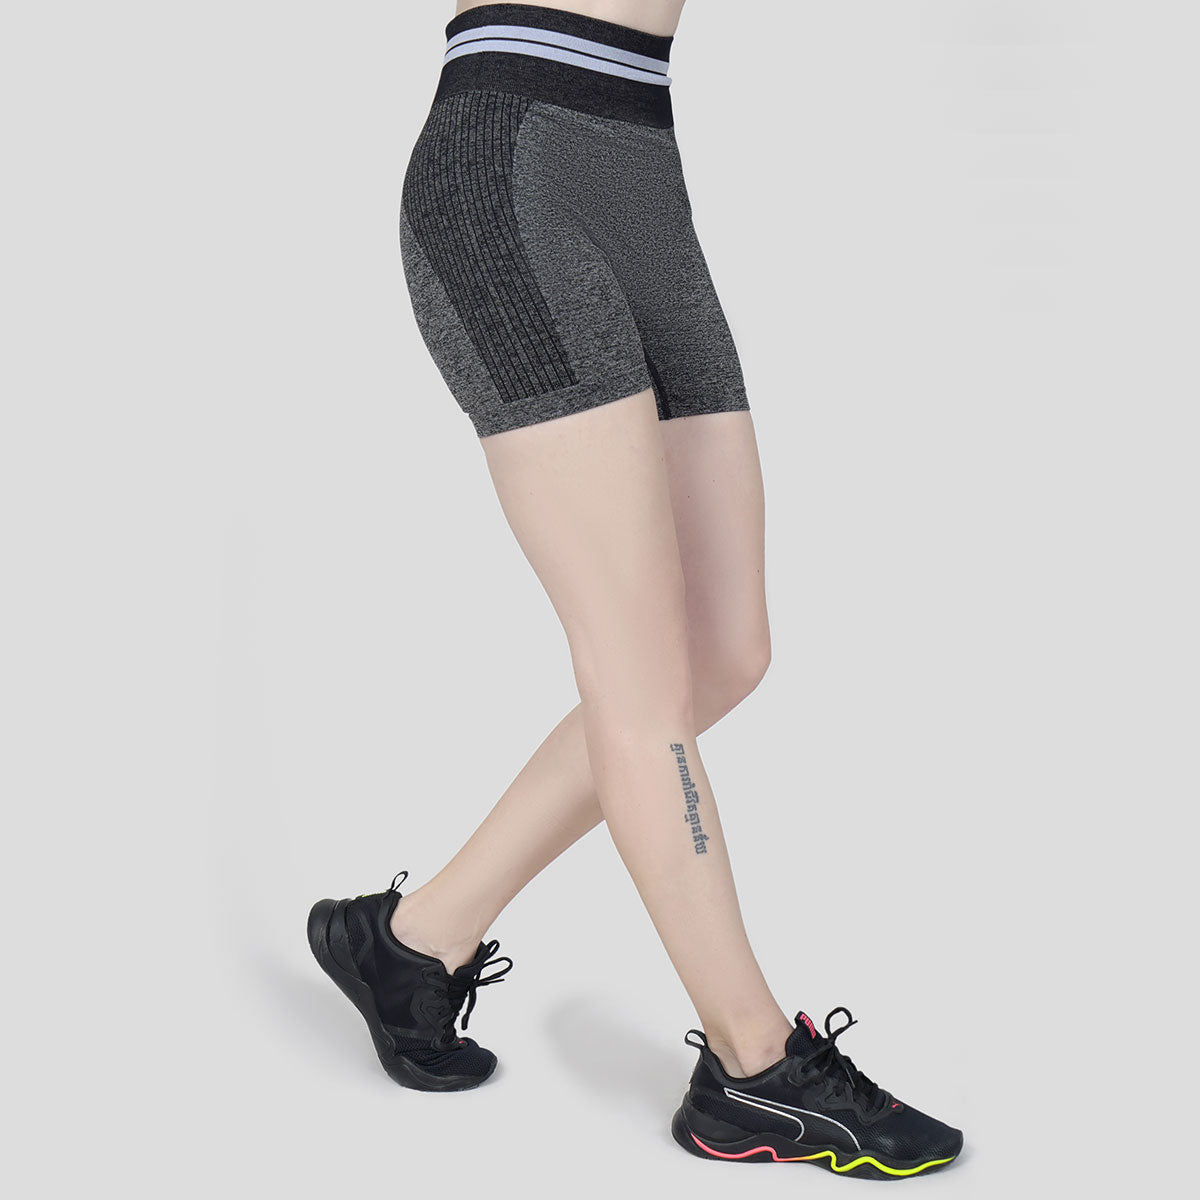 Workout Seamless Shorts